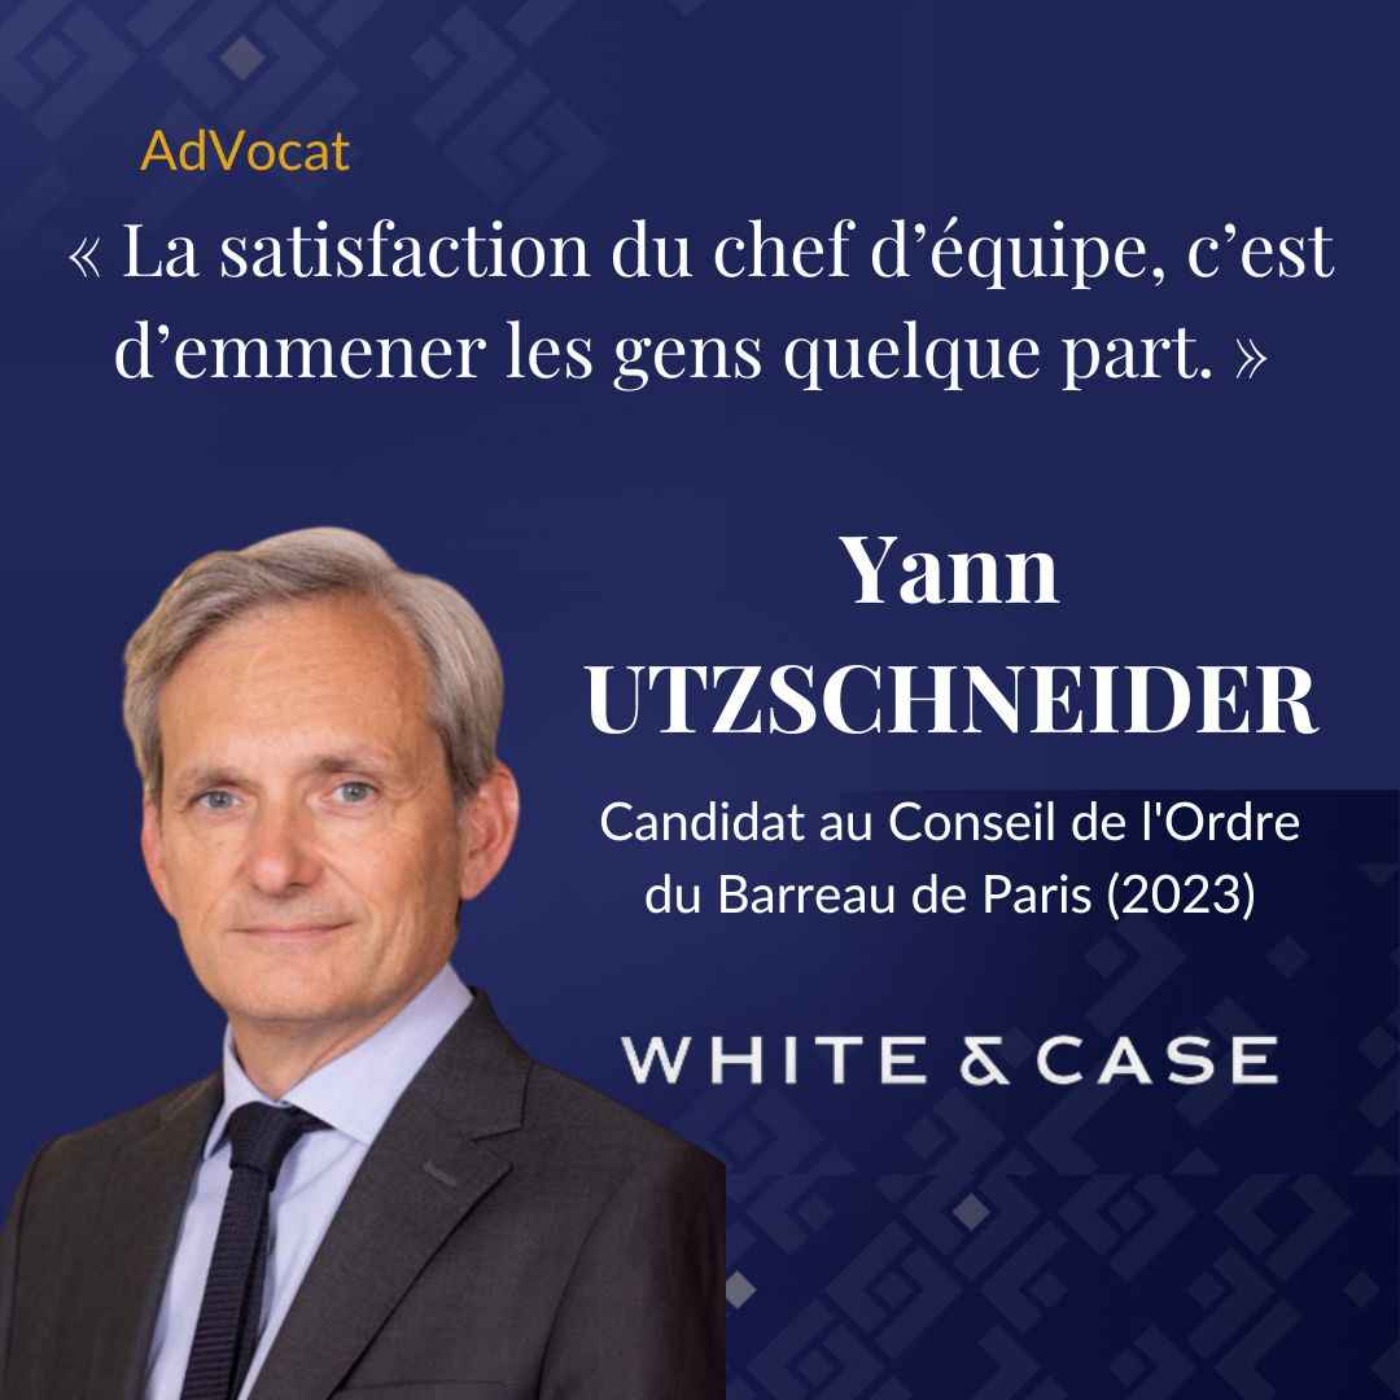 Yann UTZSCHNEIDER, Partner chez White&Case | Candidat au Conseil de l'Ordre du Barreau de Paris (2023)